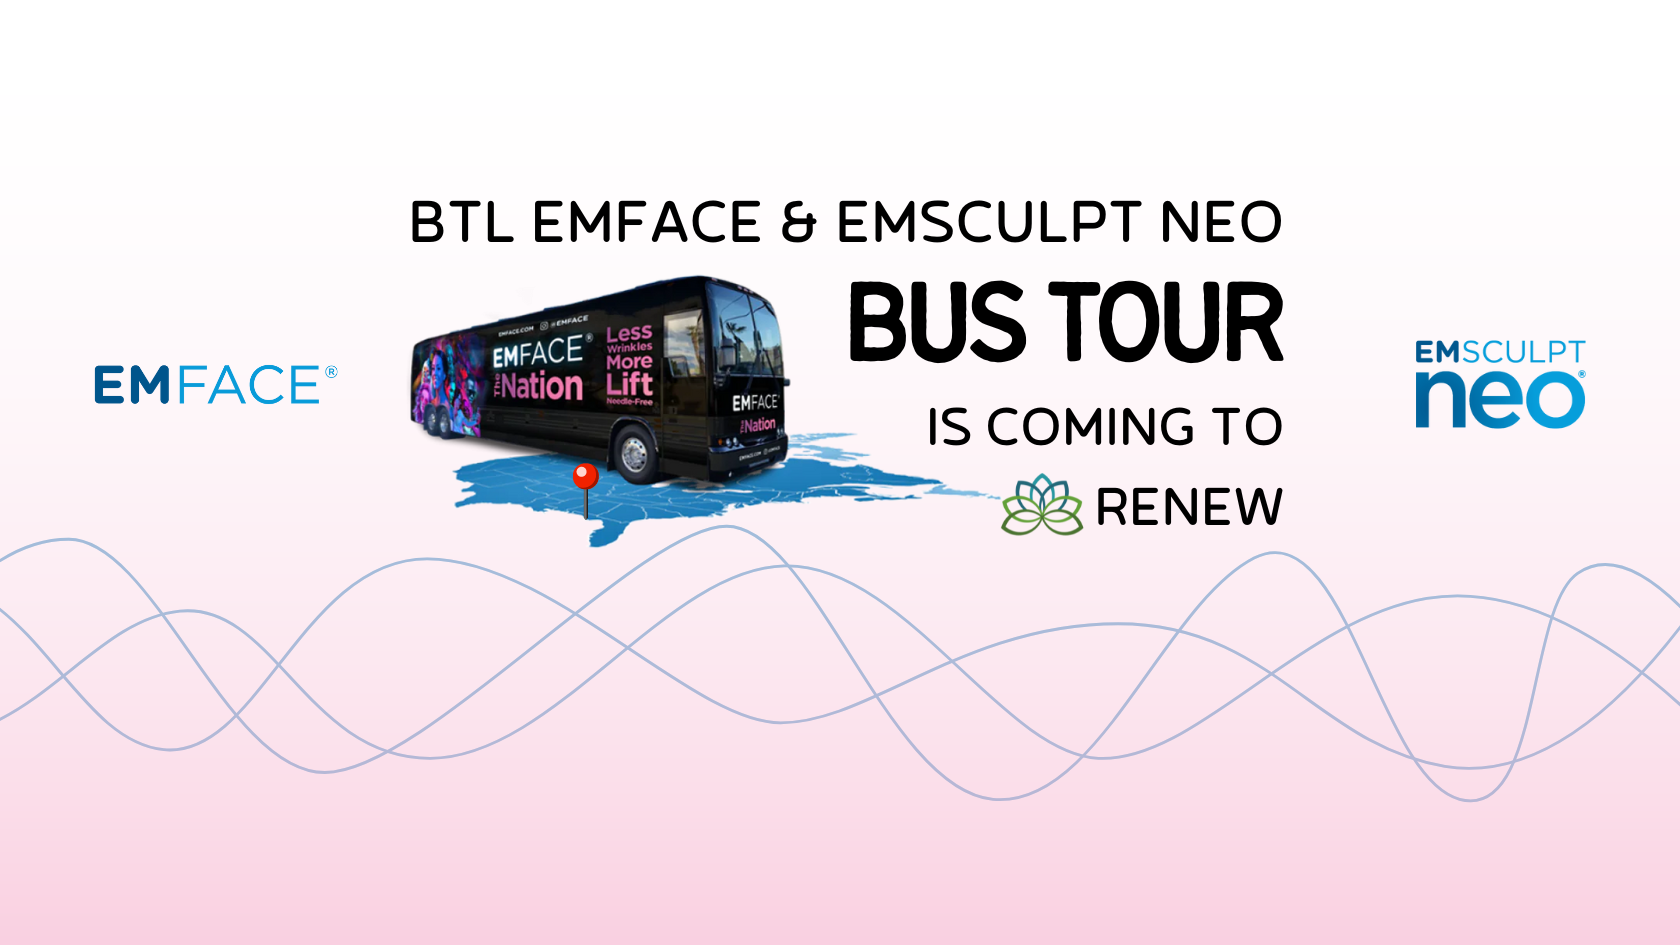 Emsculpt Neo Bus Tour in Rogers Arkansas